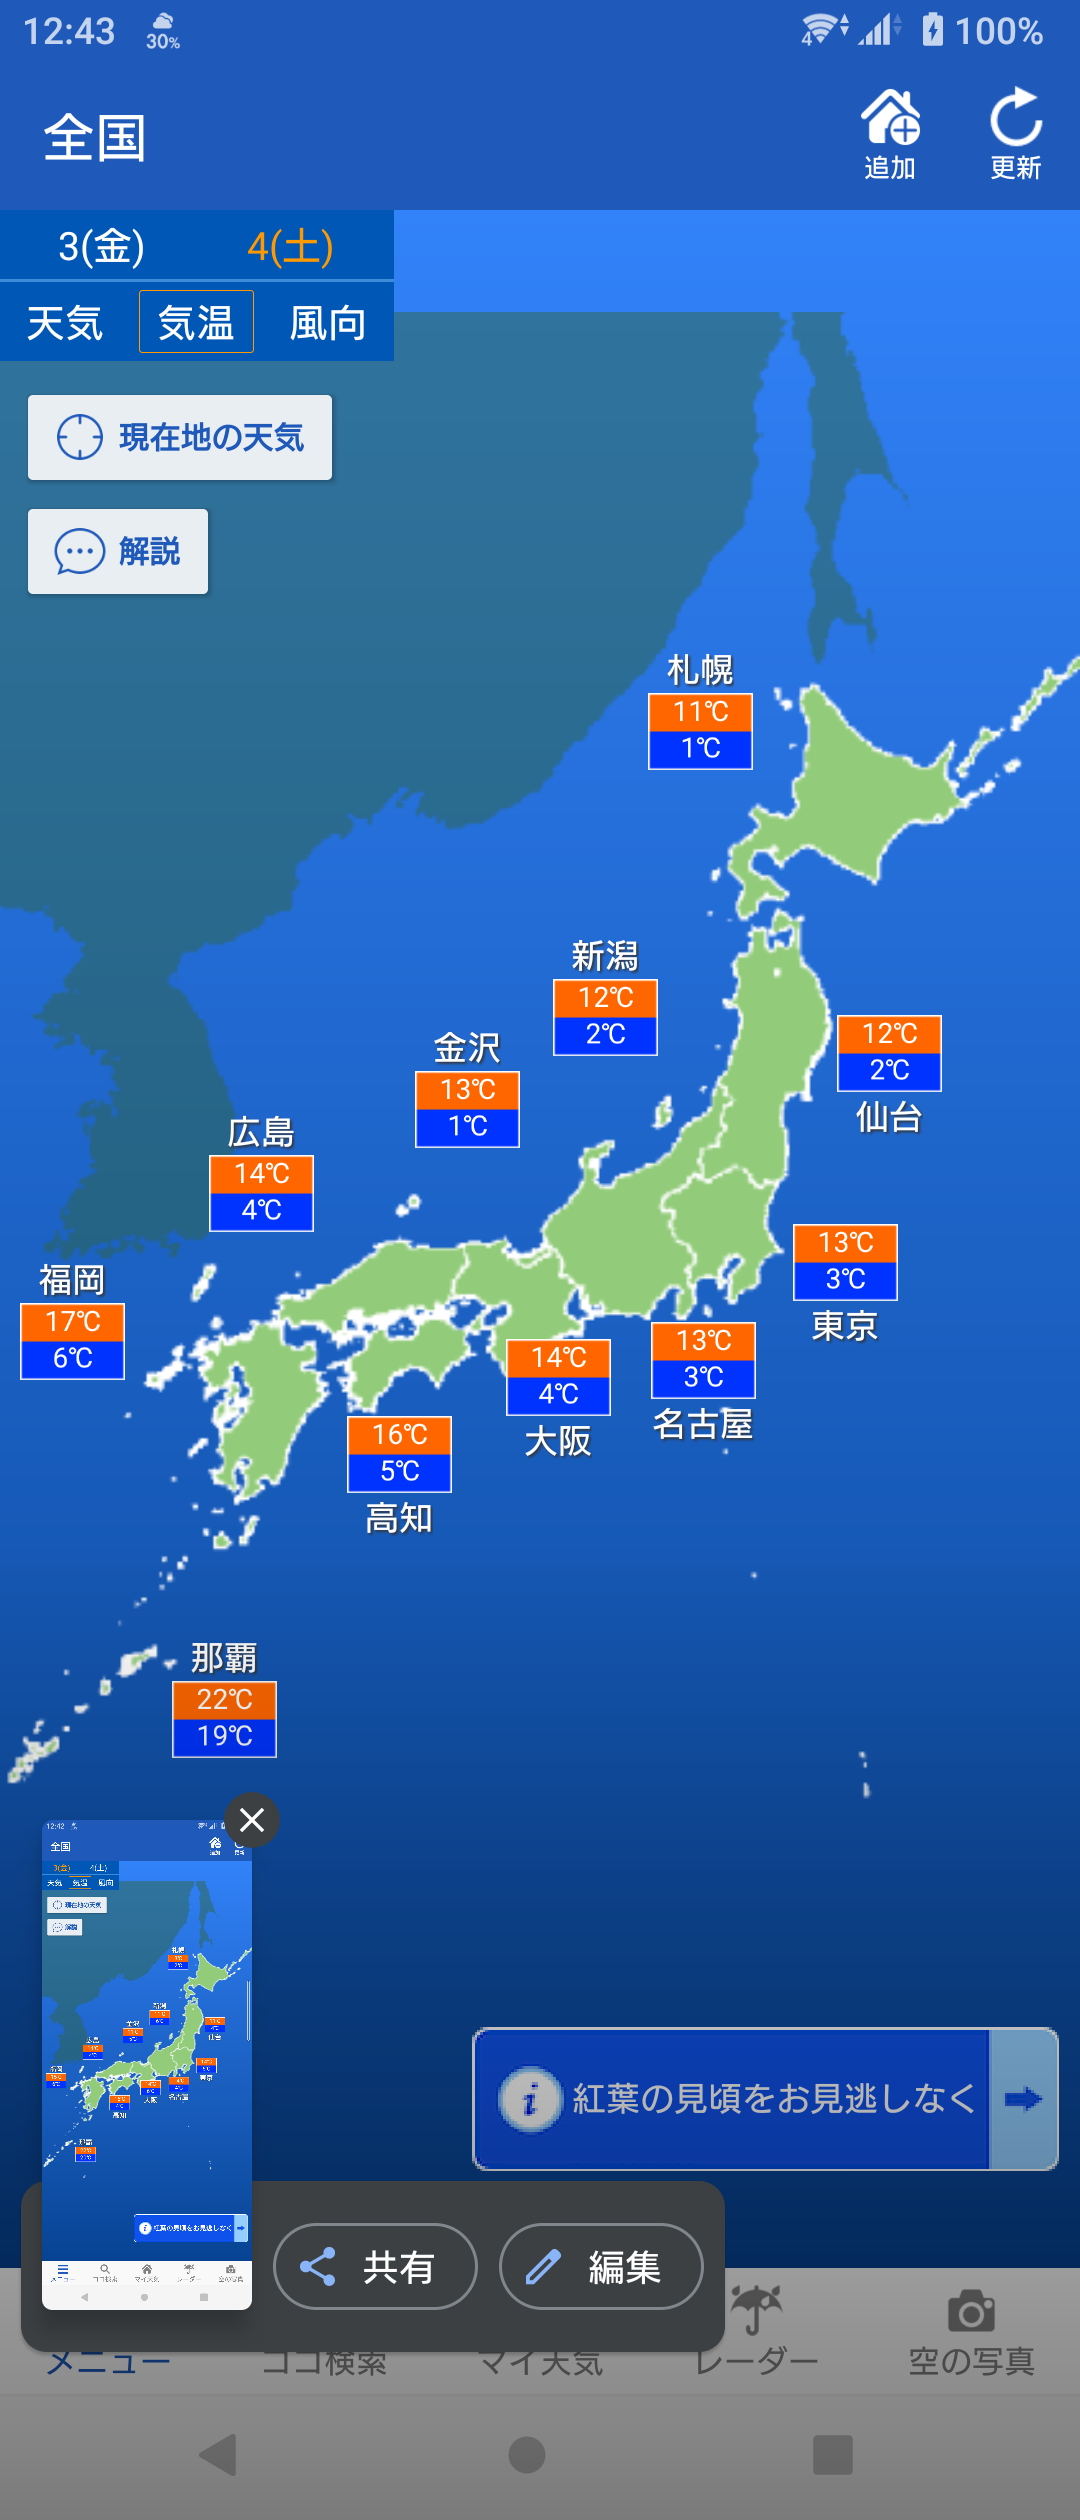 今日明日の気温。琉球王国だけは温かいが、...